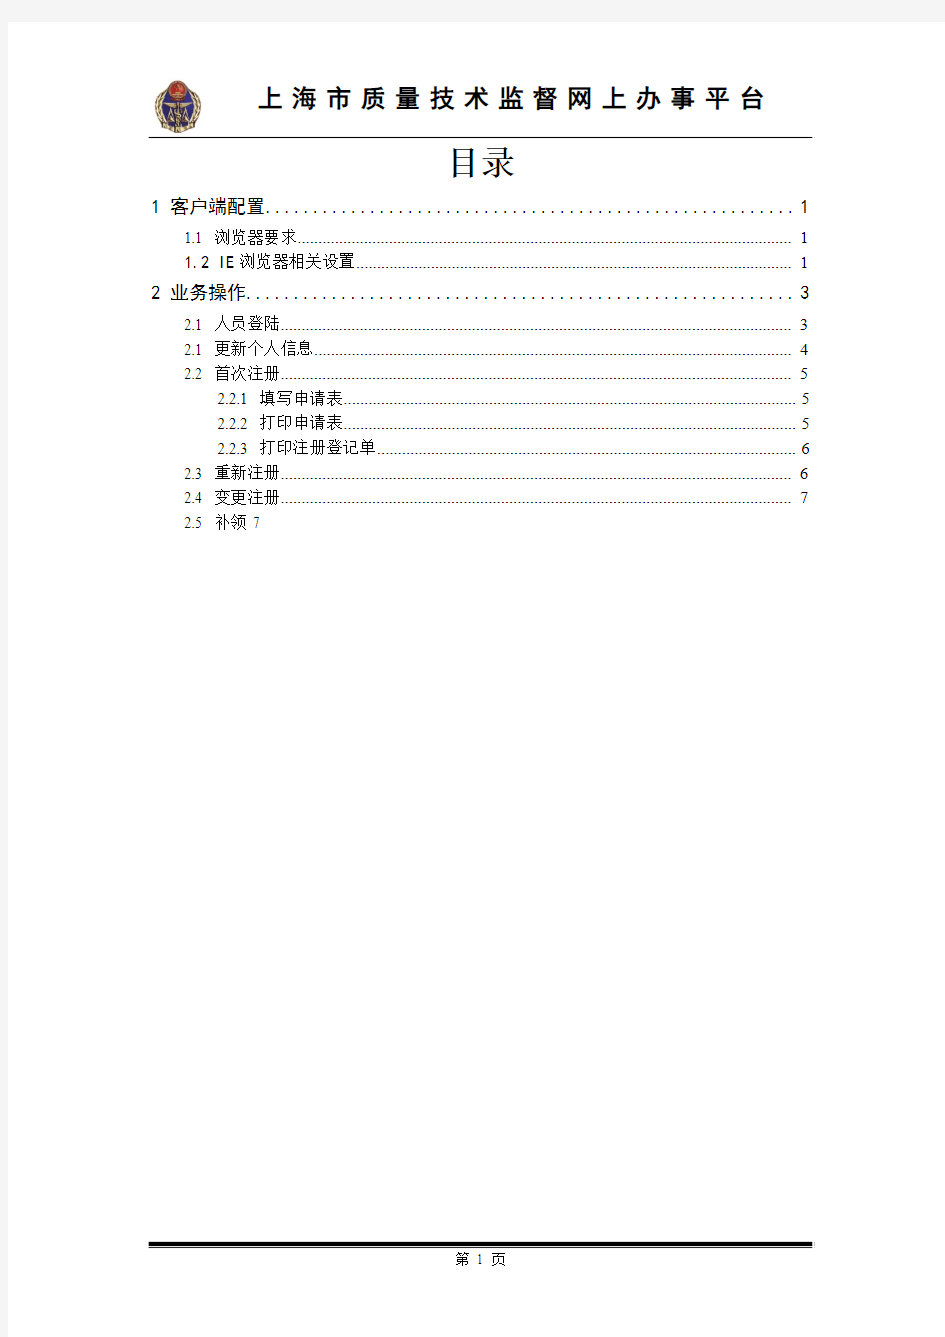 上海市质量技术监督质量专业技术人员系统网上办事平台操作手册(人员)